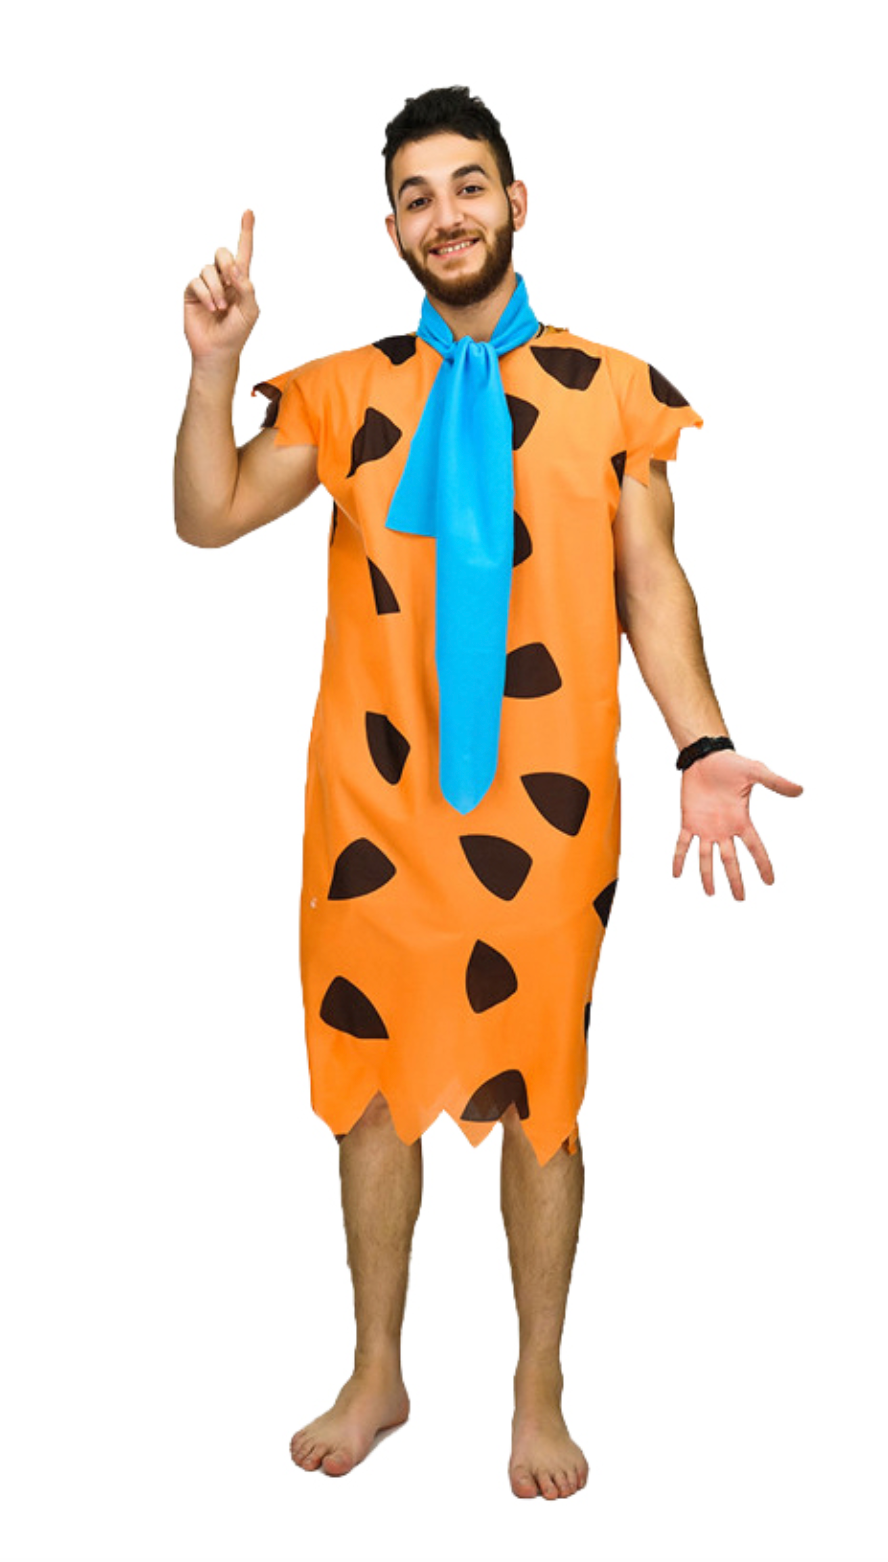 The Flintstones Fred Flintstone Costume